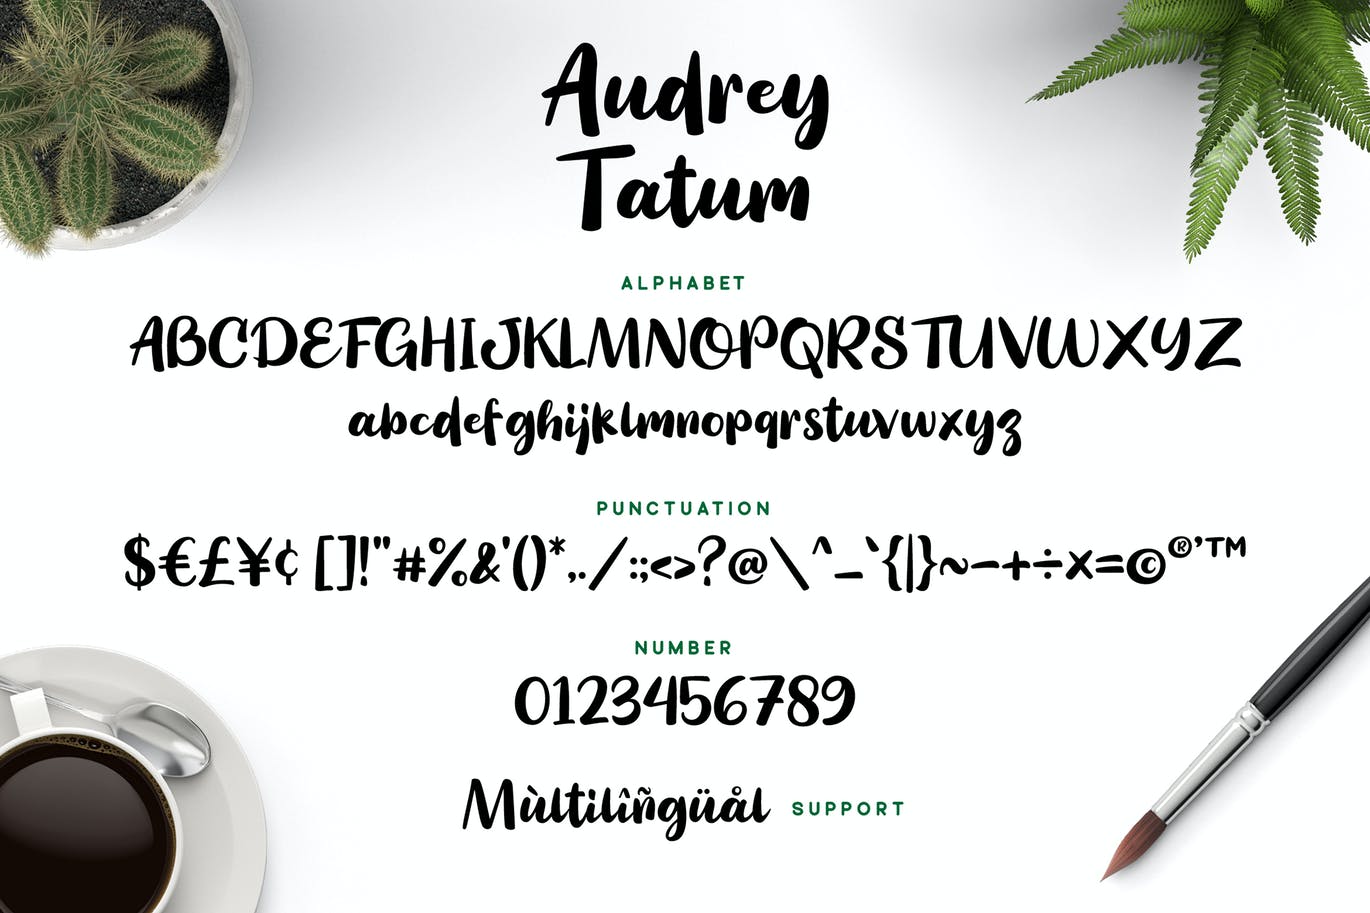 服装设计连字字体素材 Audrey Tatum – Playful Font 设计素材 第3张